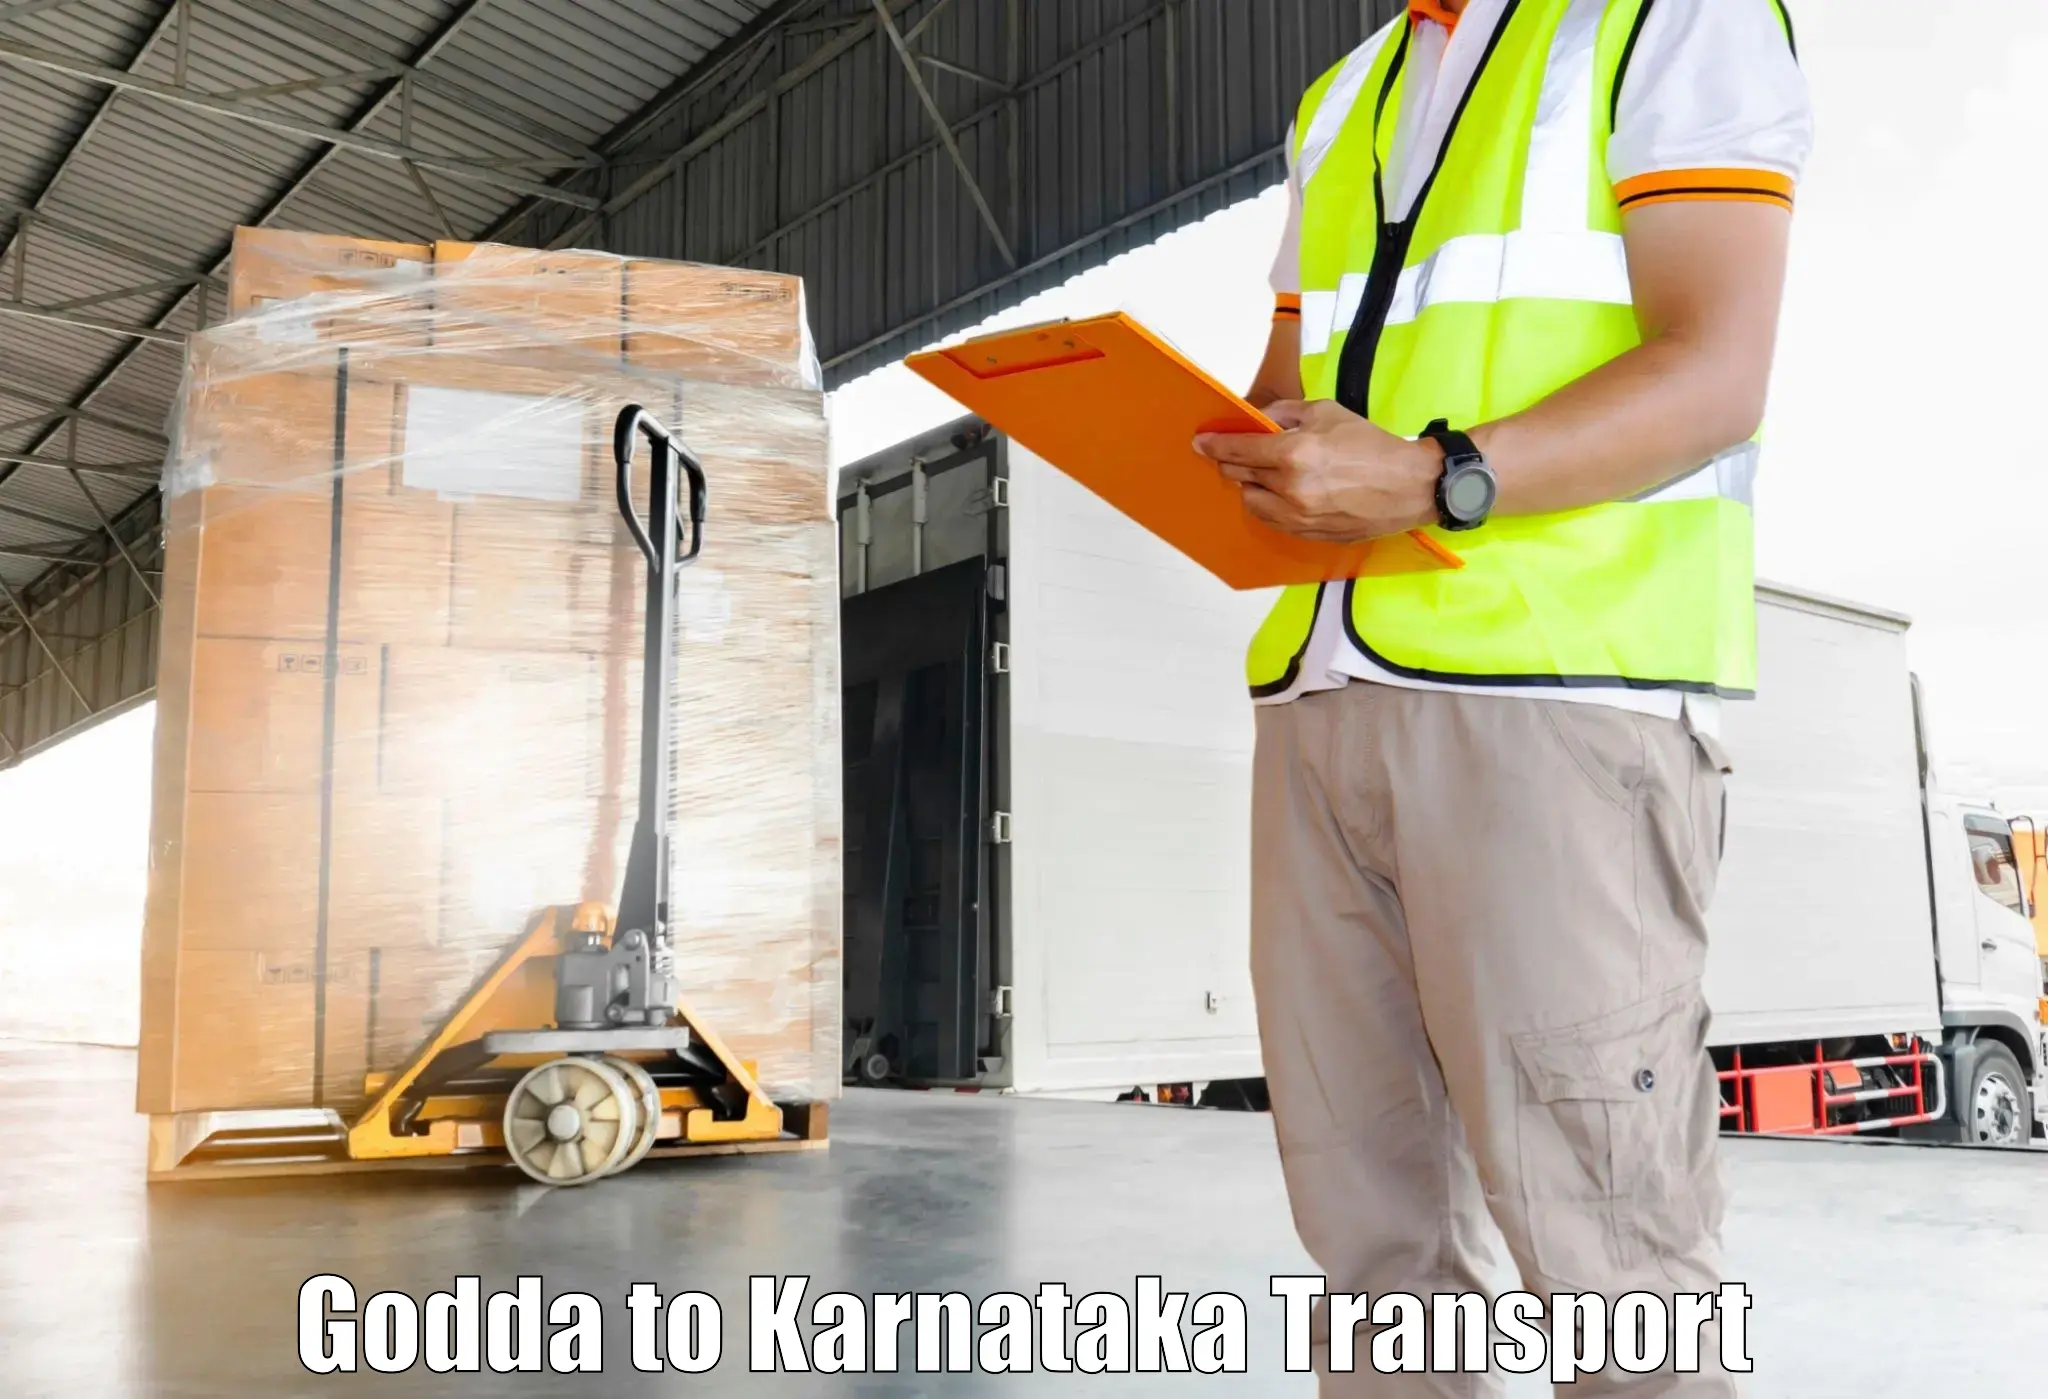 Online transport booking in Godda to Basavakalyan